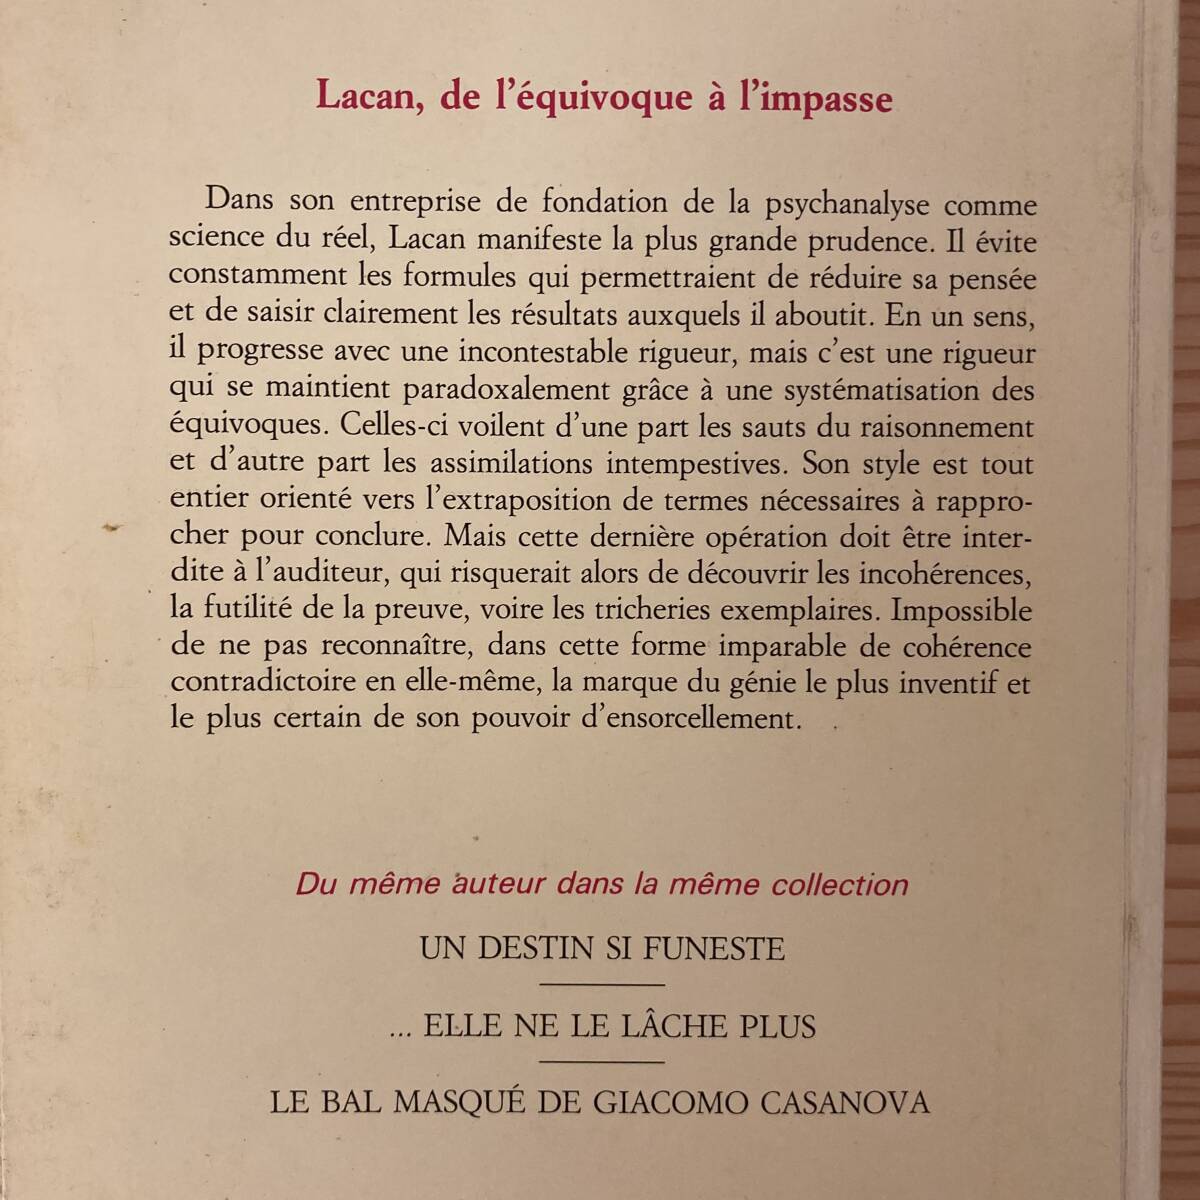 【仏語洋書】Lacan: de l’equivoque a l’impasse / Francois Roustang（著）【精神分析 ジャック・ラカン】_画像2